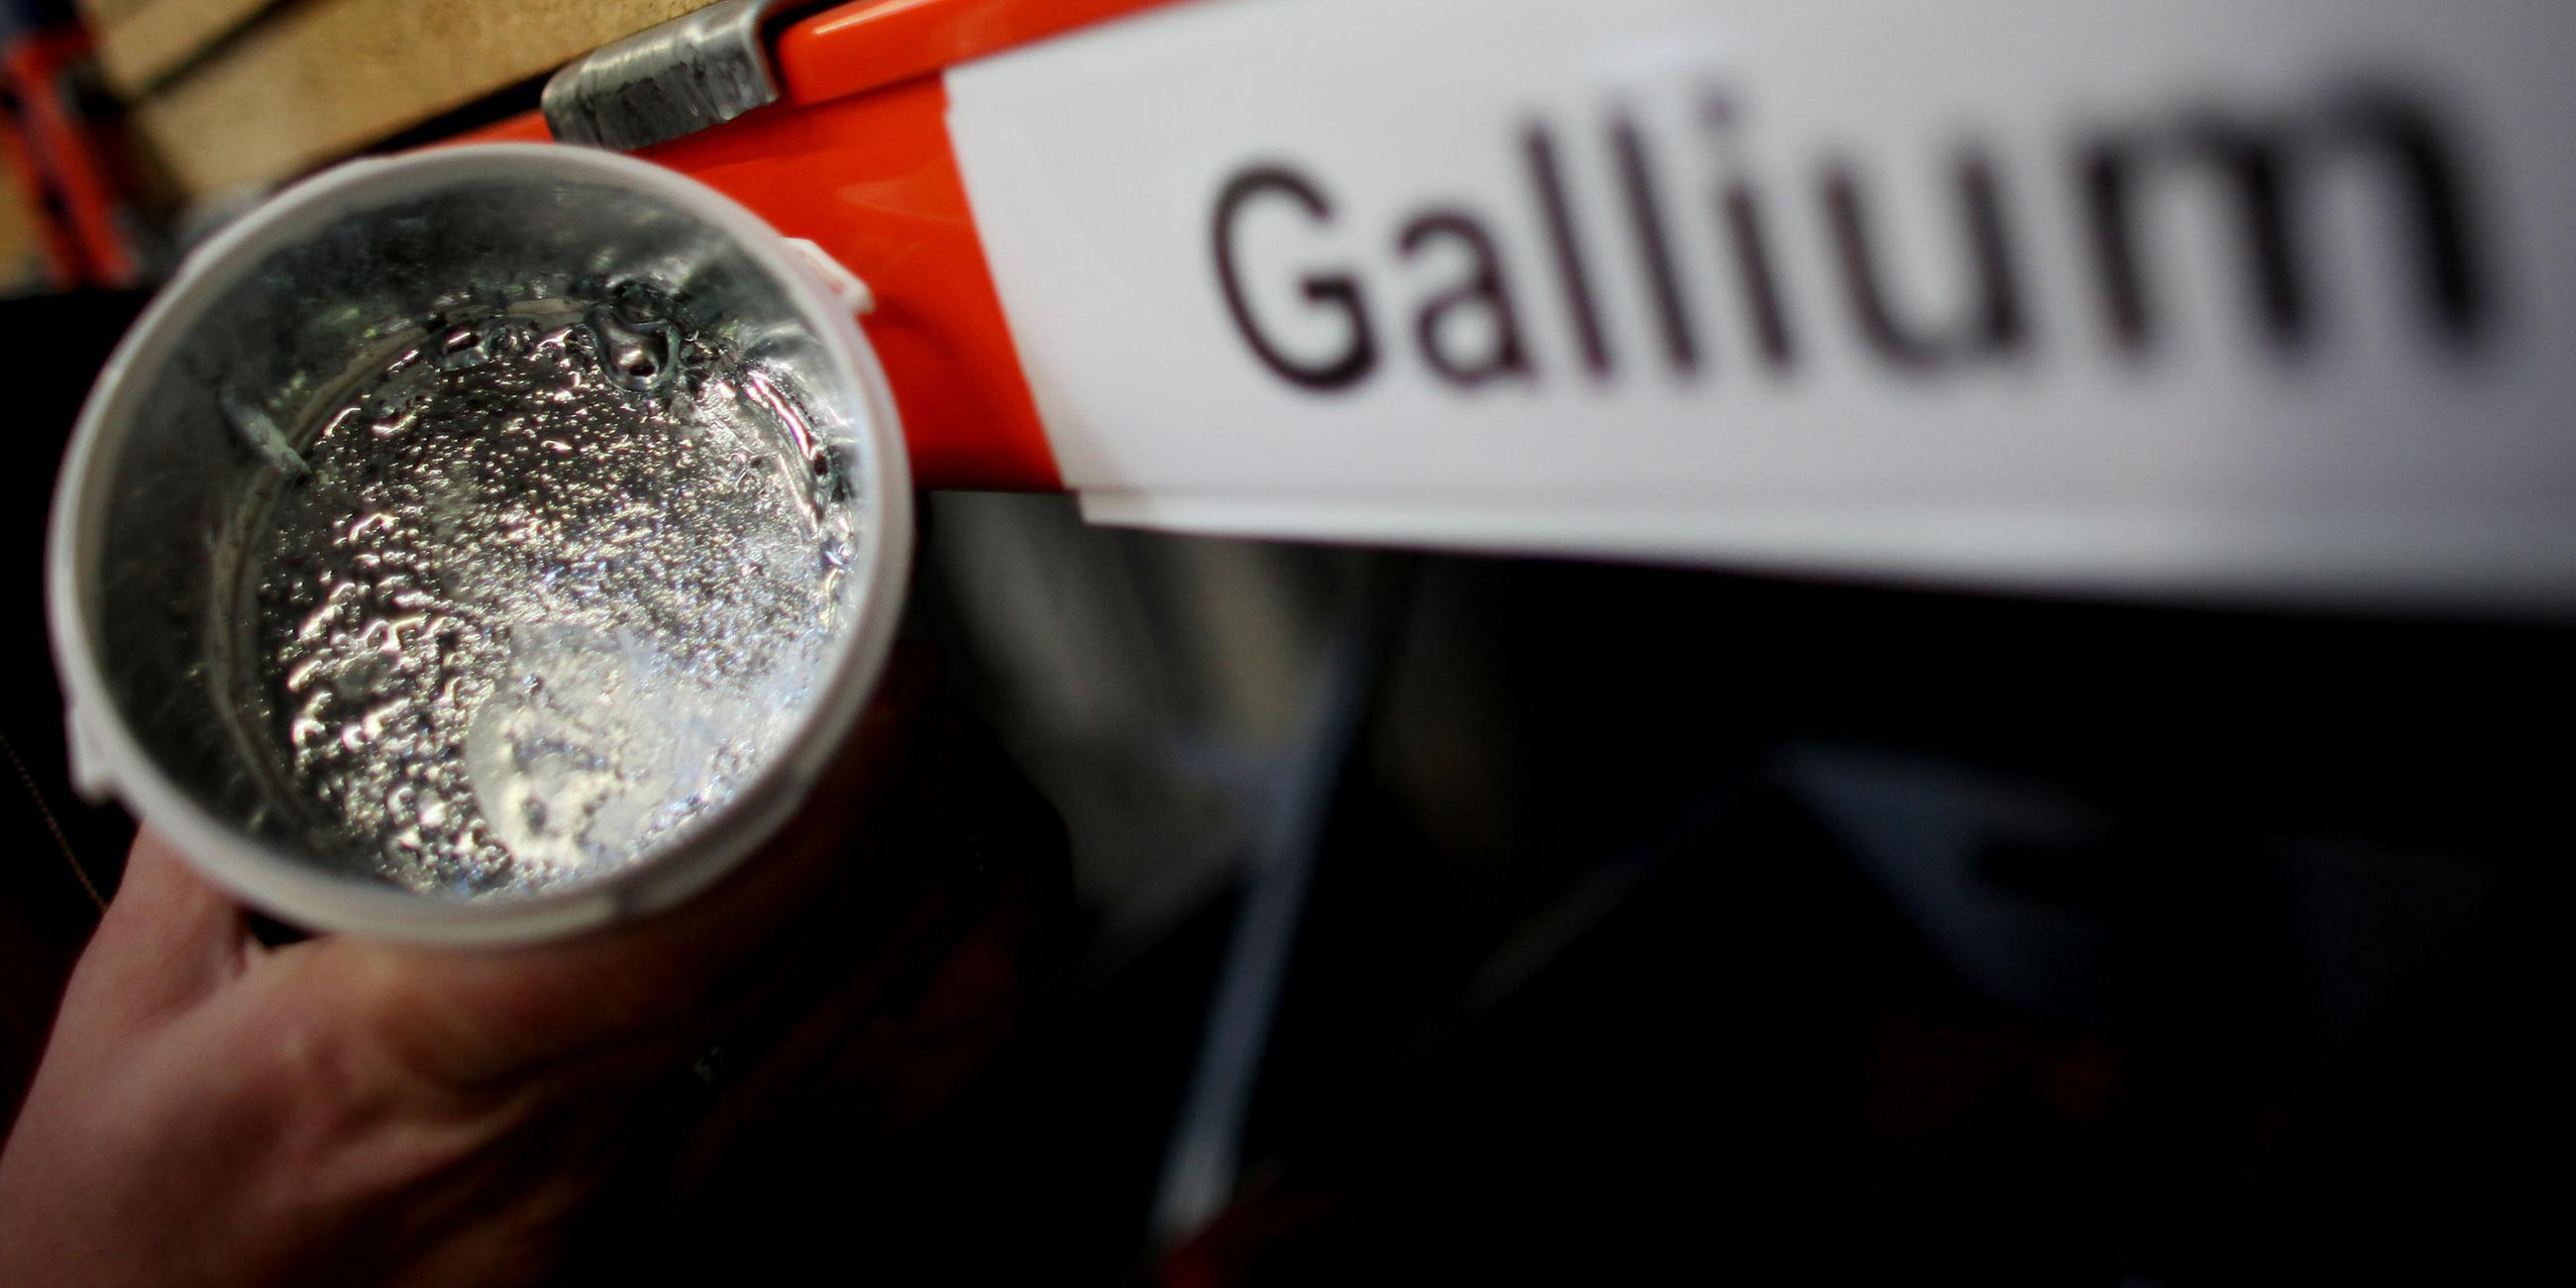 Behälter mit seltenem Metall Gallium